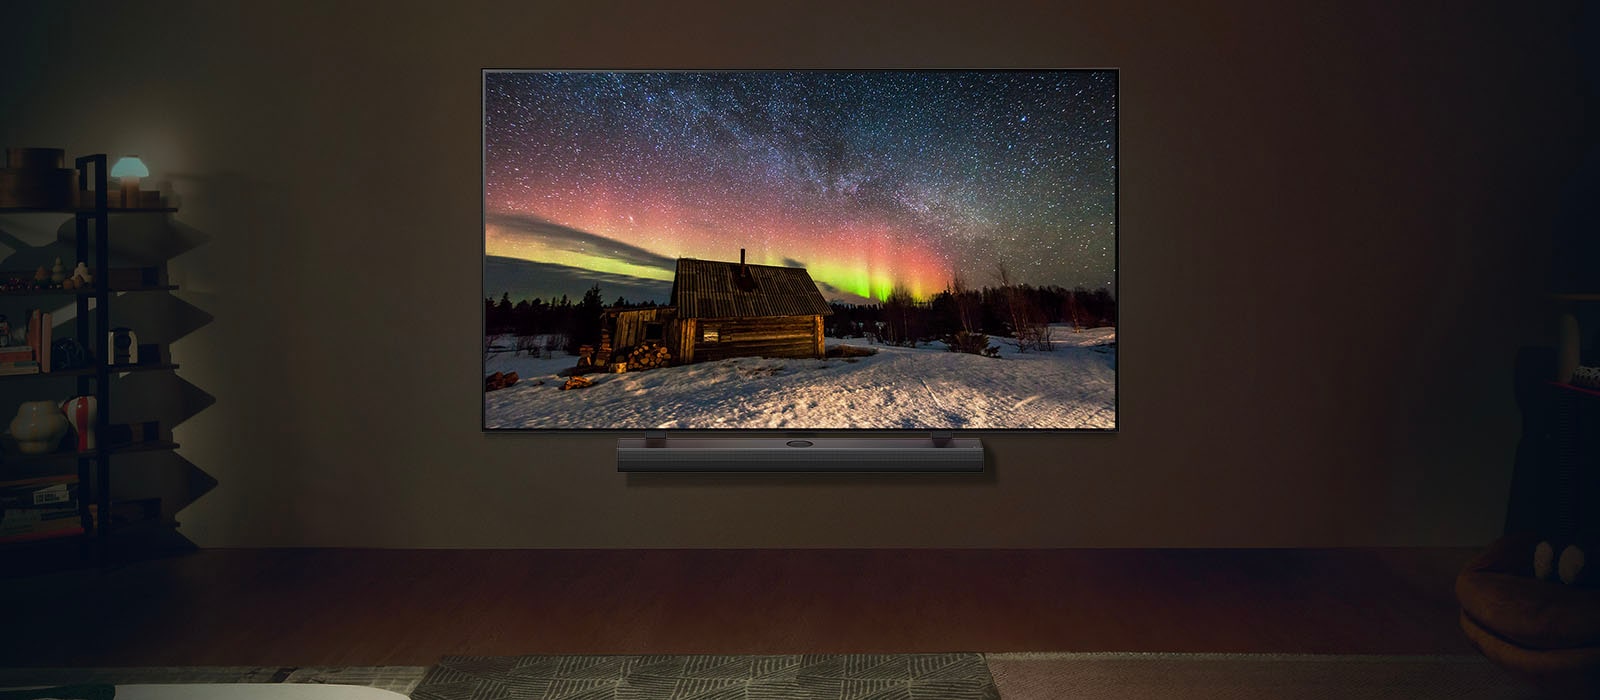 夜晚時間位於現代客廳空間的 LG TV 和 LG Soundbar。極光螢幕影像隨著理想亮度顯示。